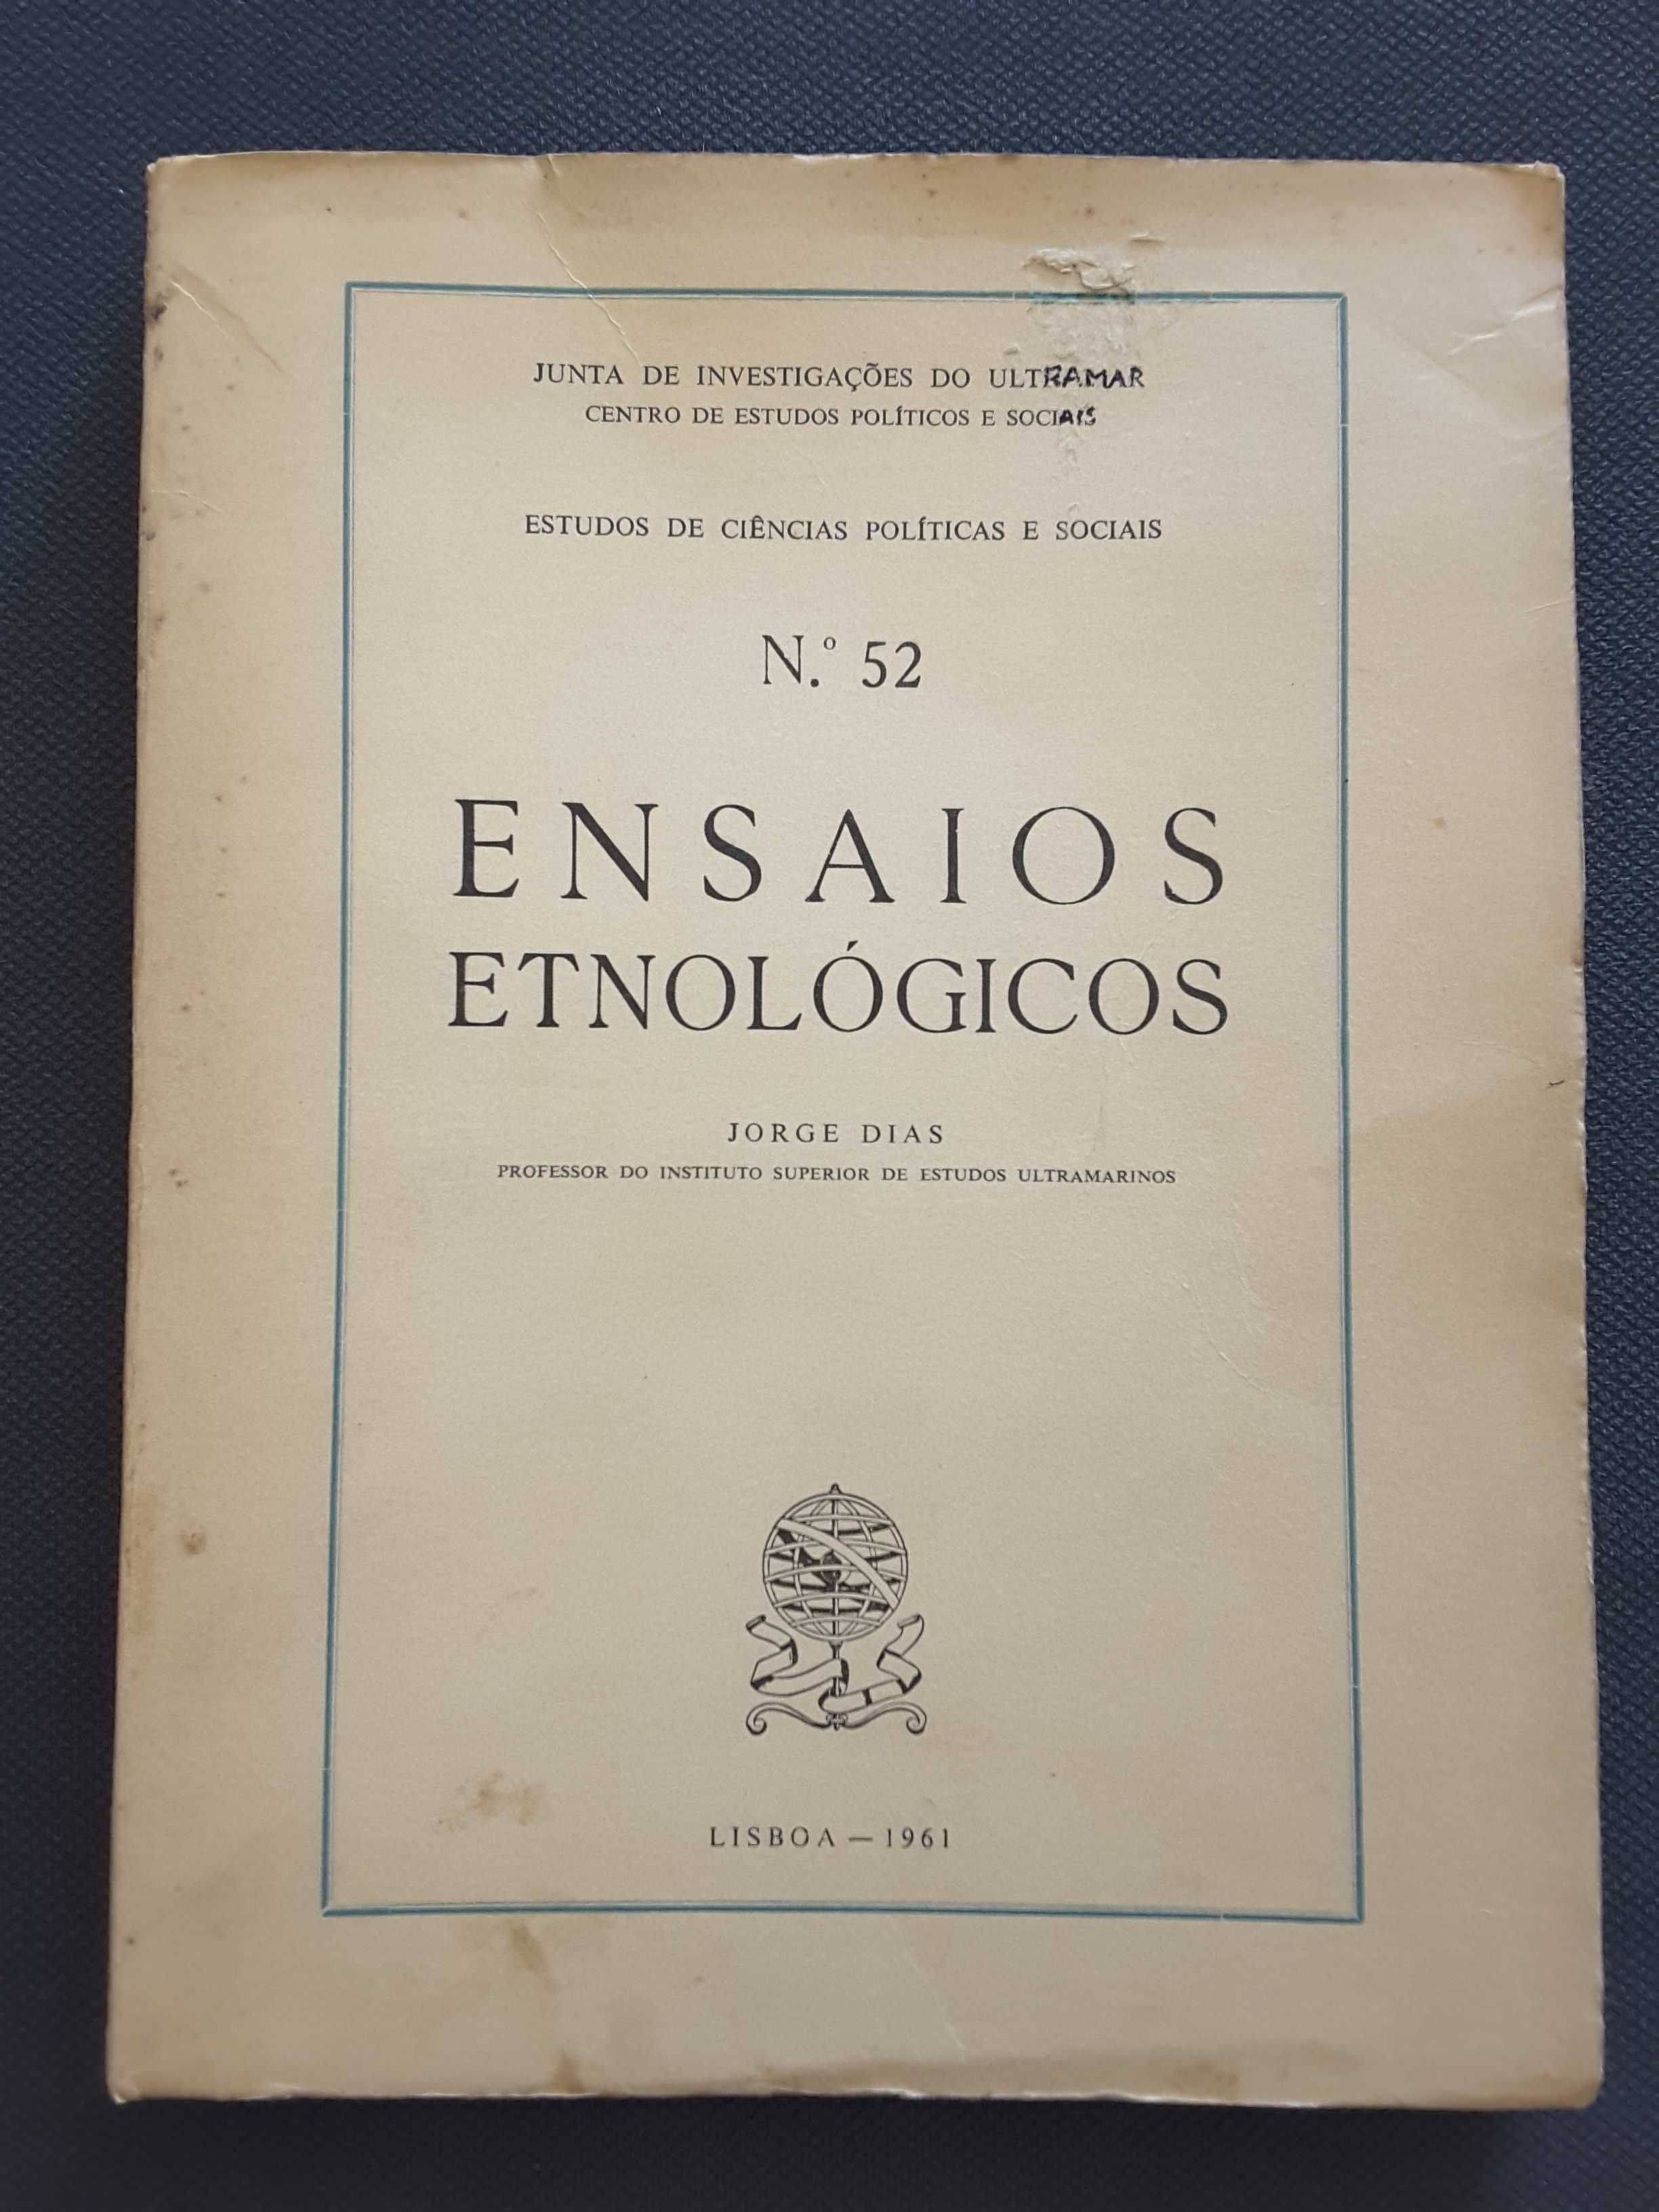 Jorge Dias. Ensaios Etnológicos / Sedas Nunes: Princípios de Doutrina